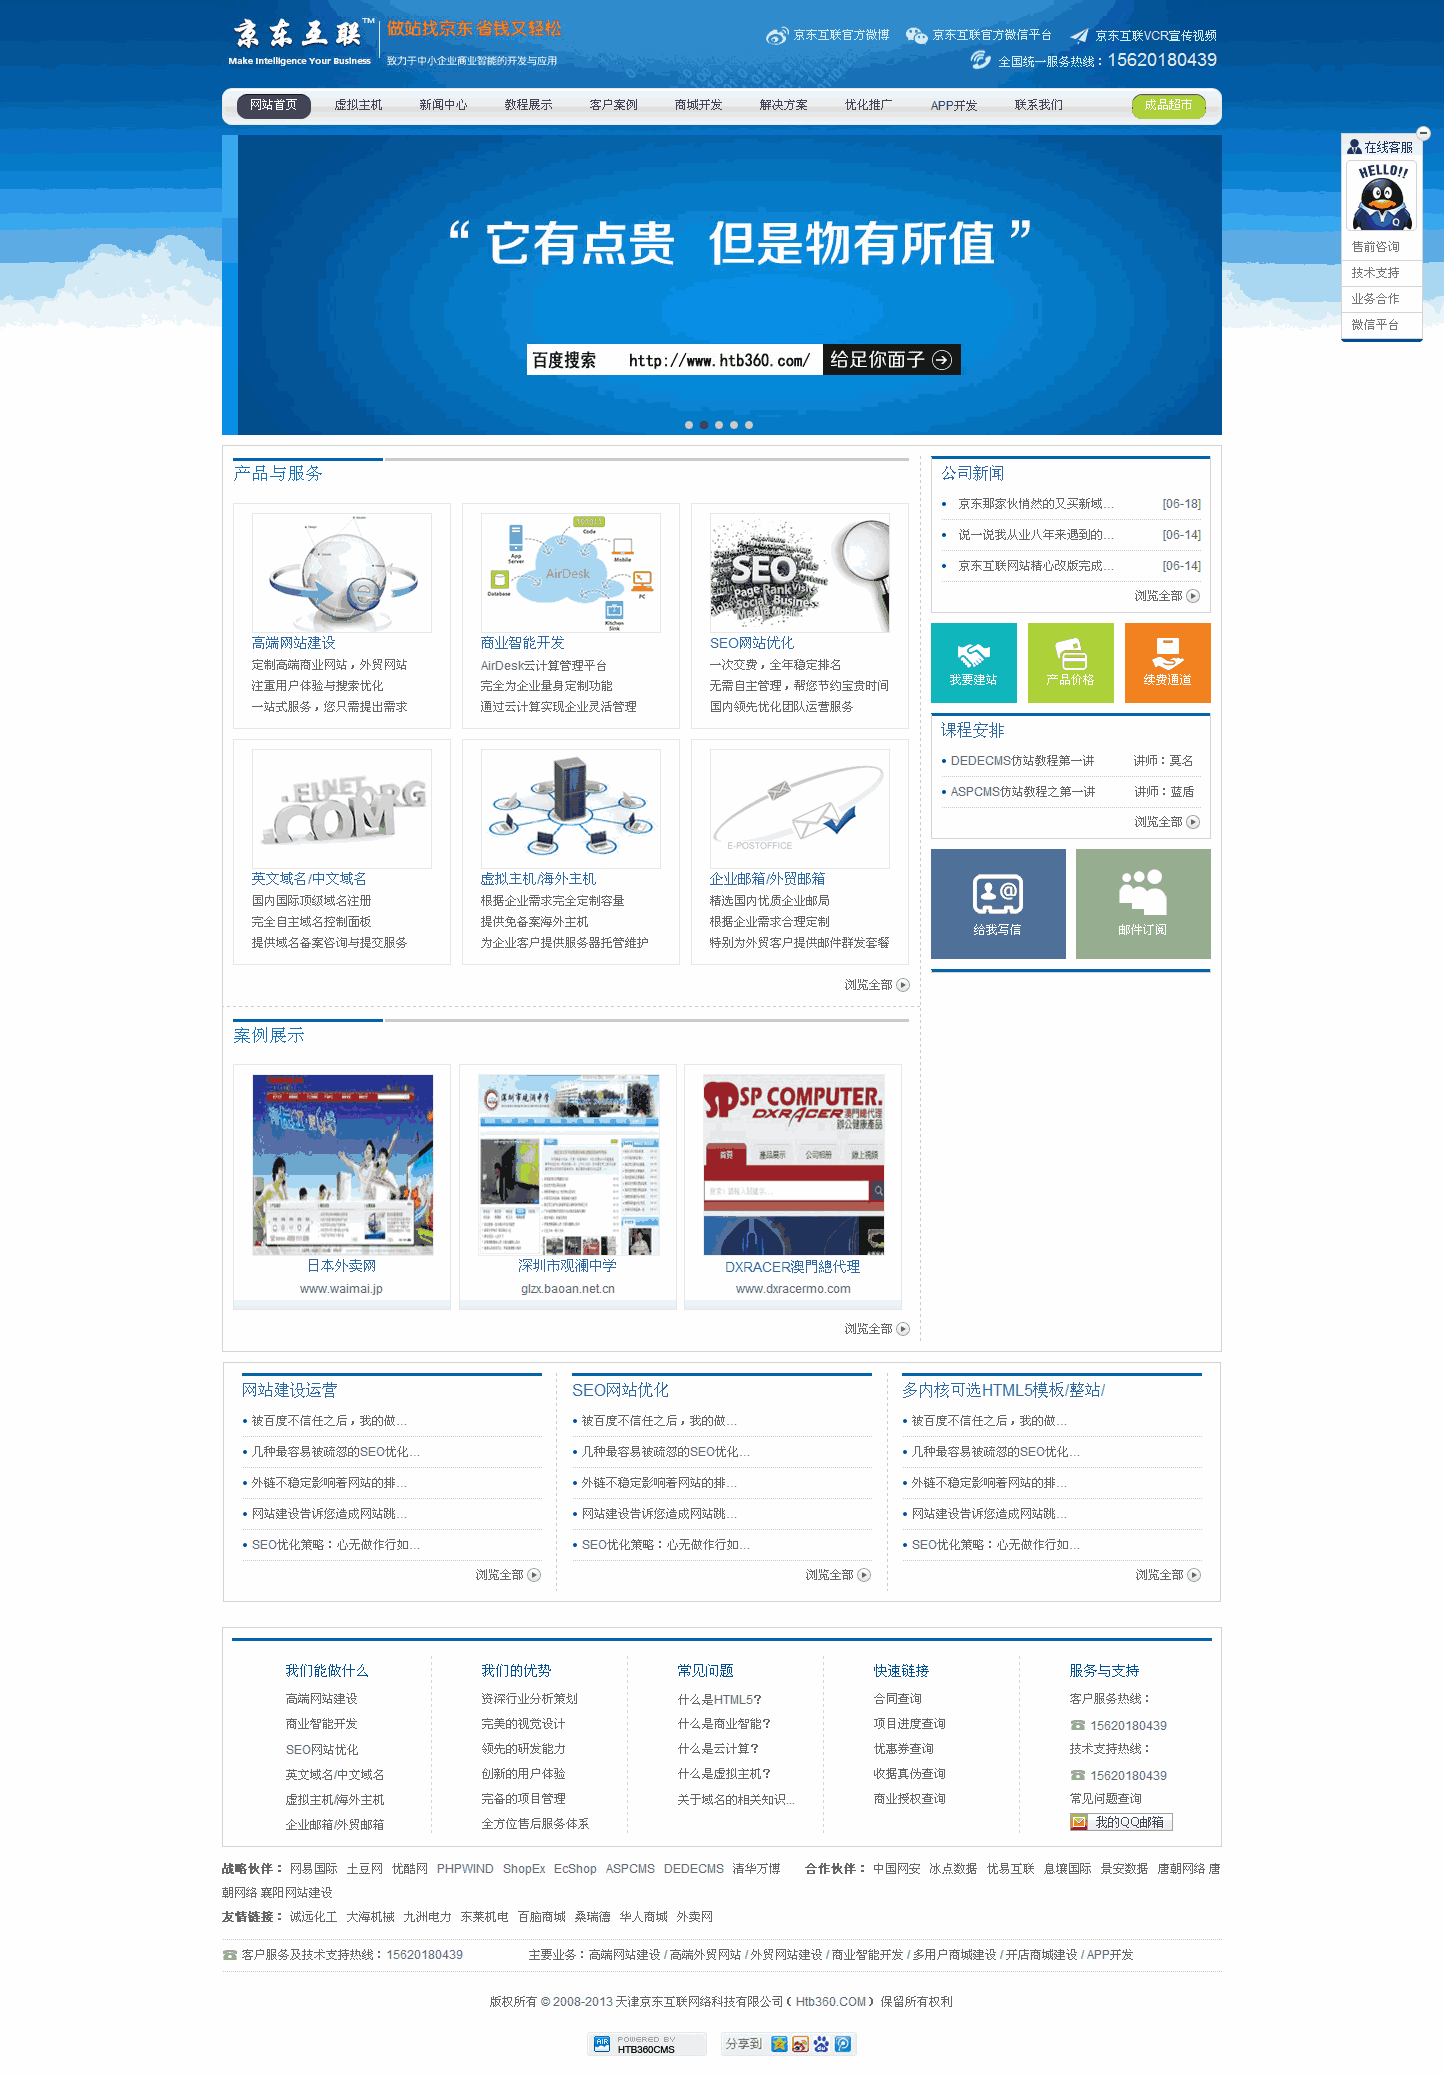 蓝色网络公司_网络公司手机自适应WordPress网站模板演示图